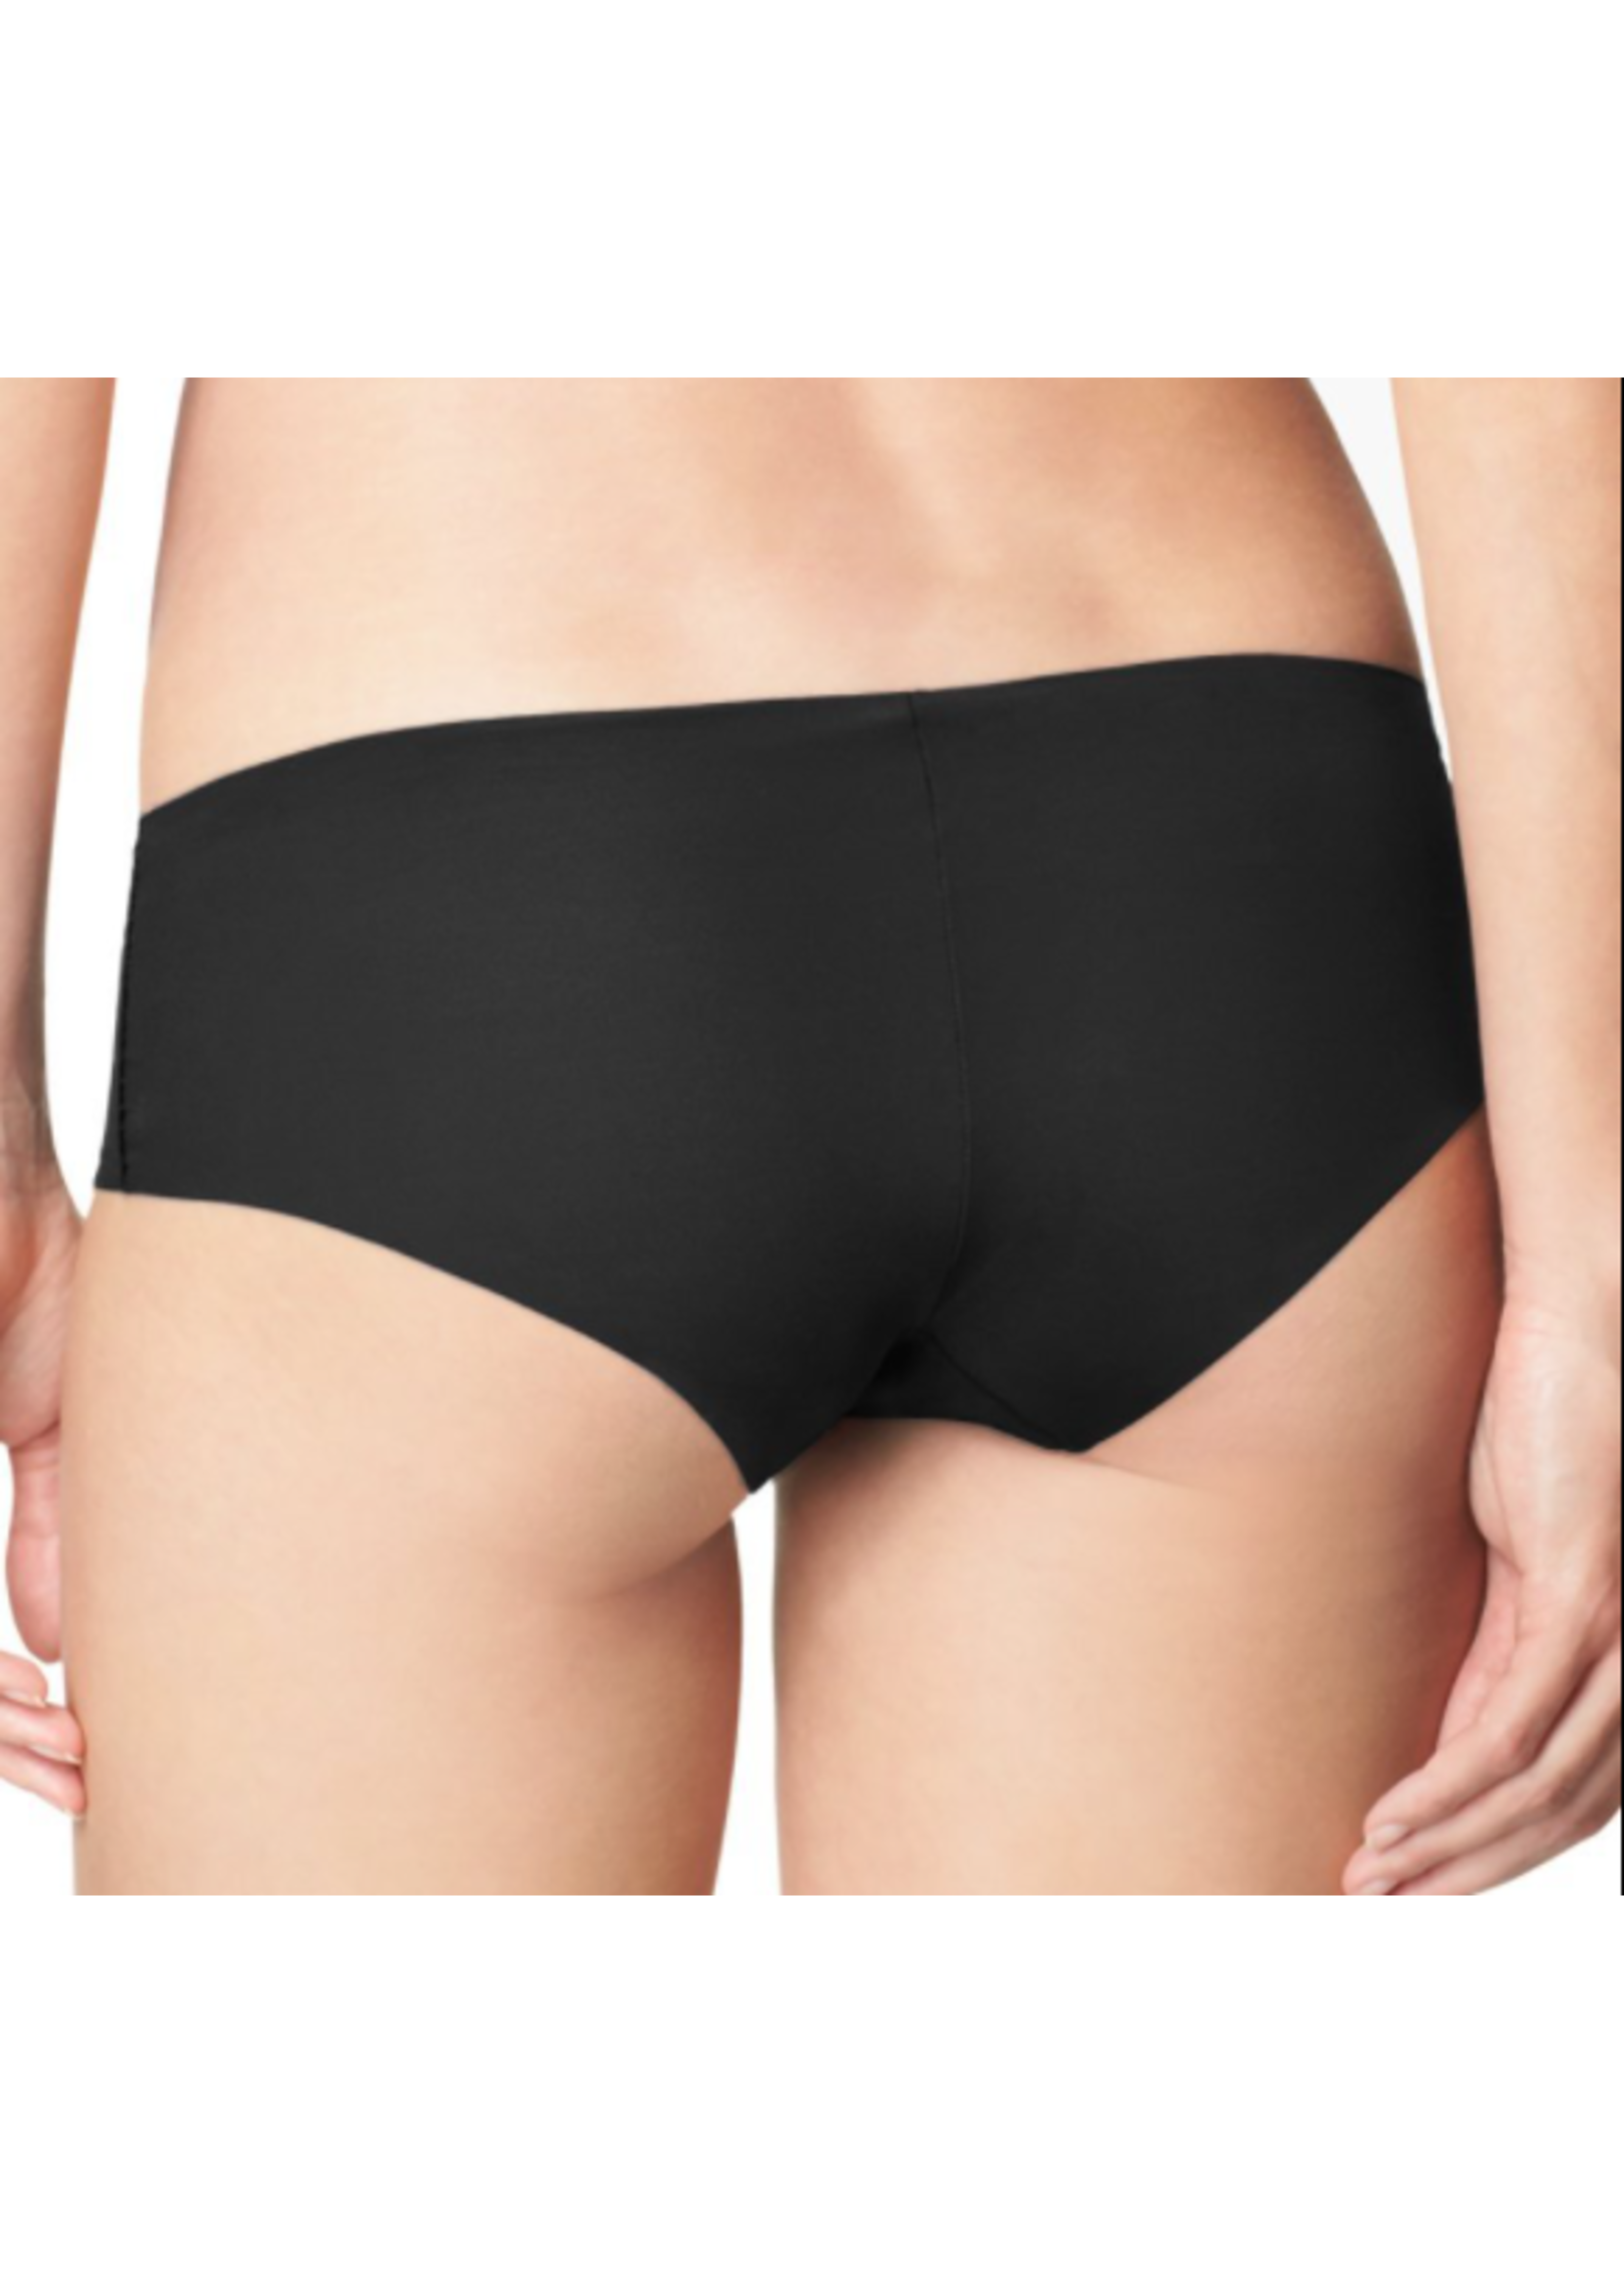 Calvin Klein Invisibles Hipster Underwear